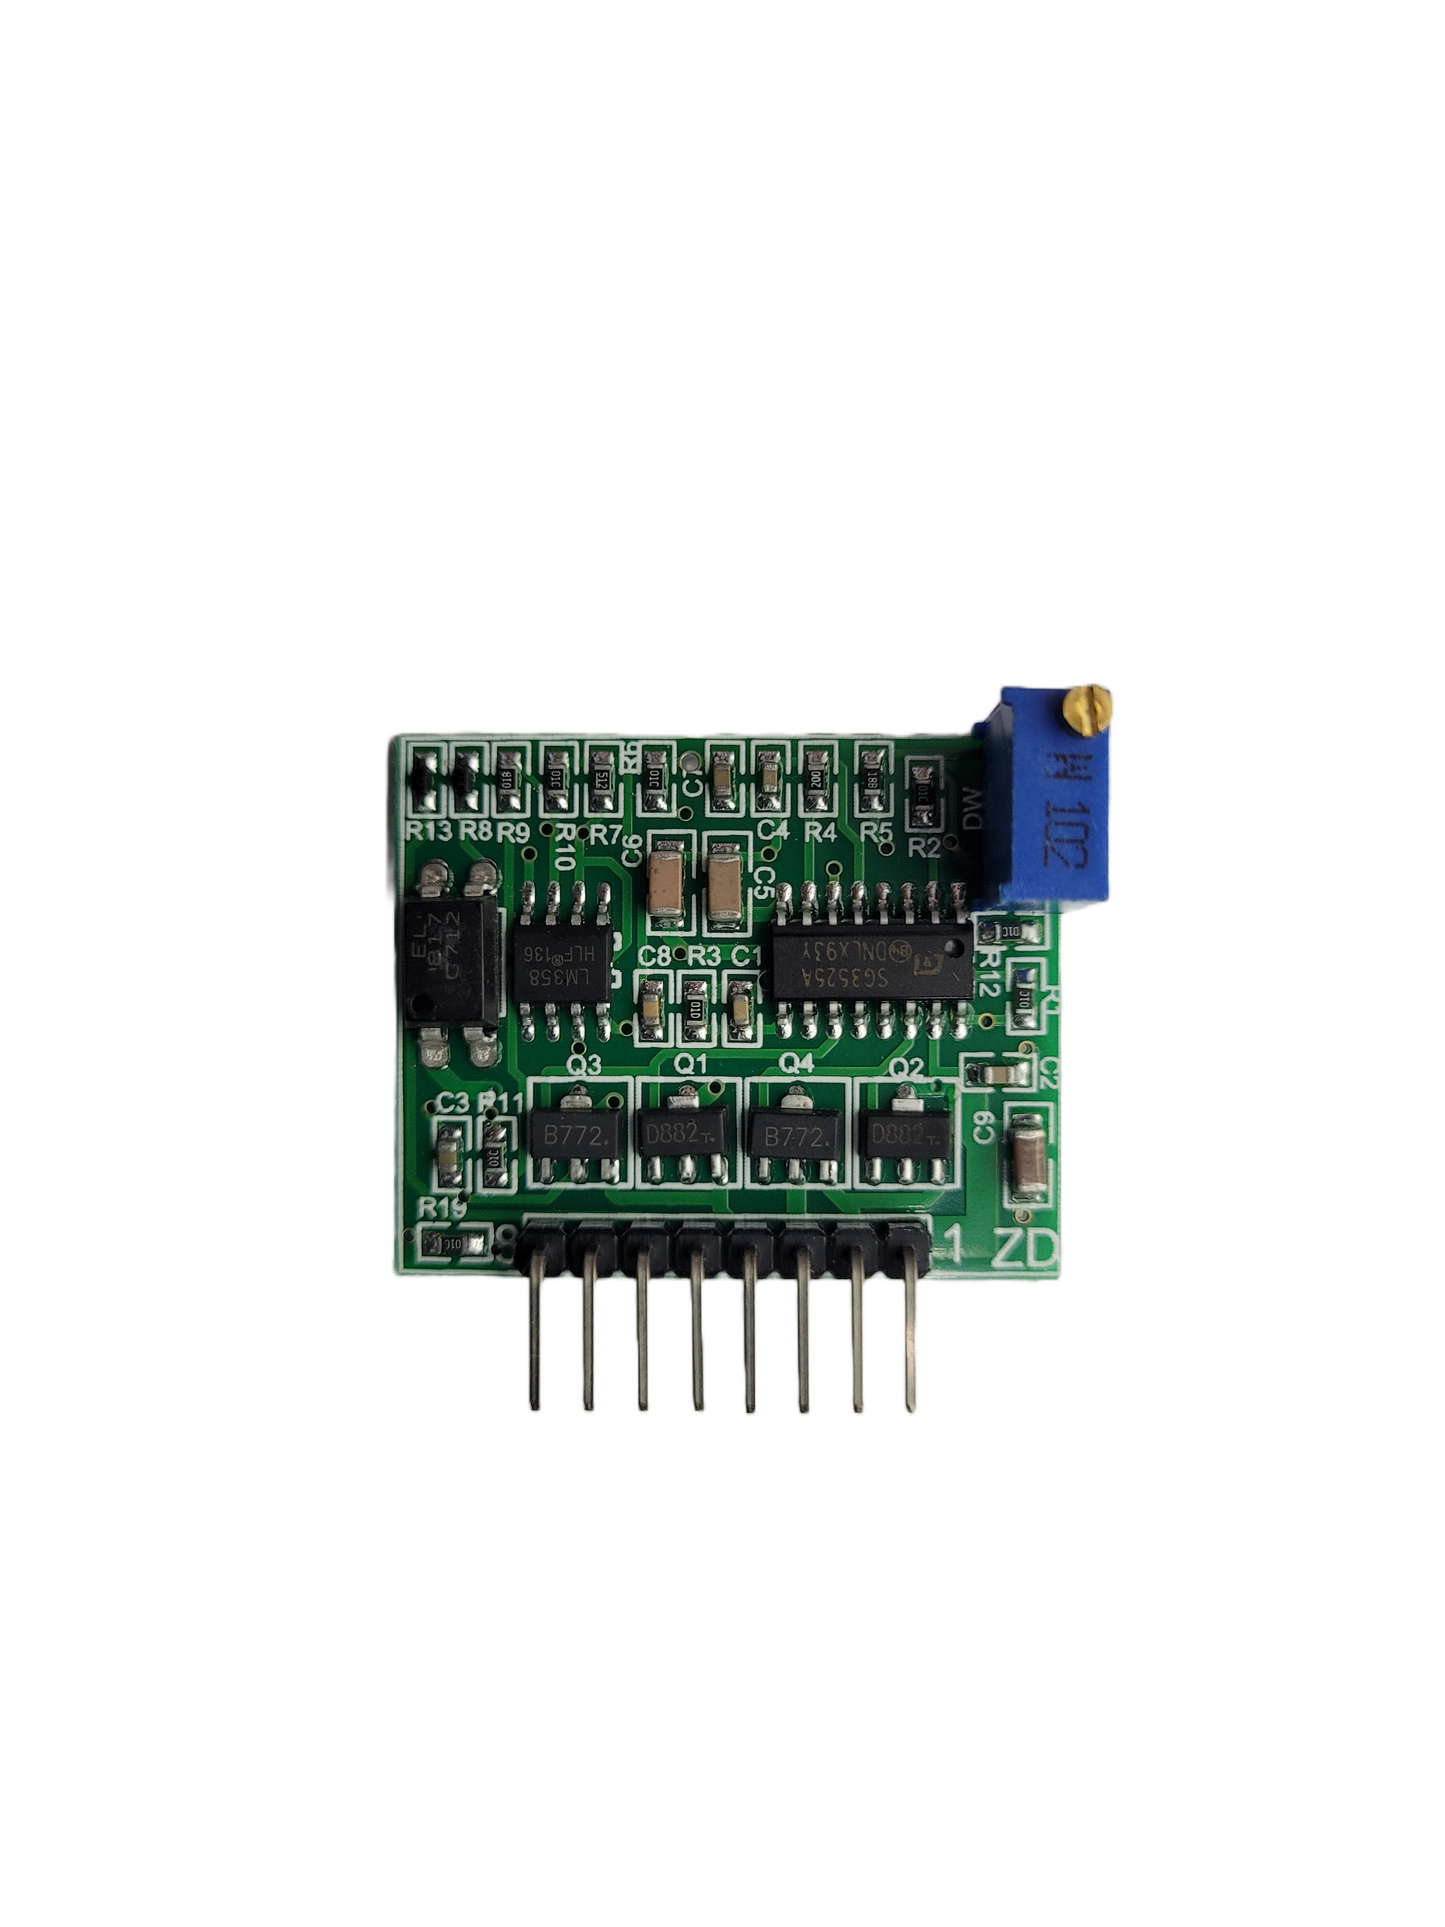 SG3525 LM358 Inverter Board 12V-24V Preamp Driver Module Frequency Adjustable 1A